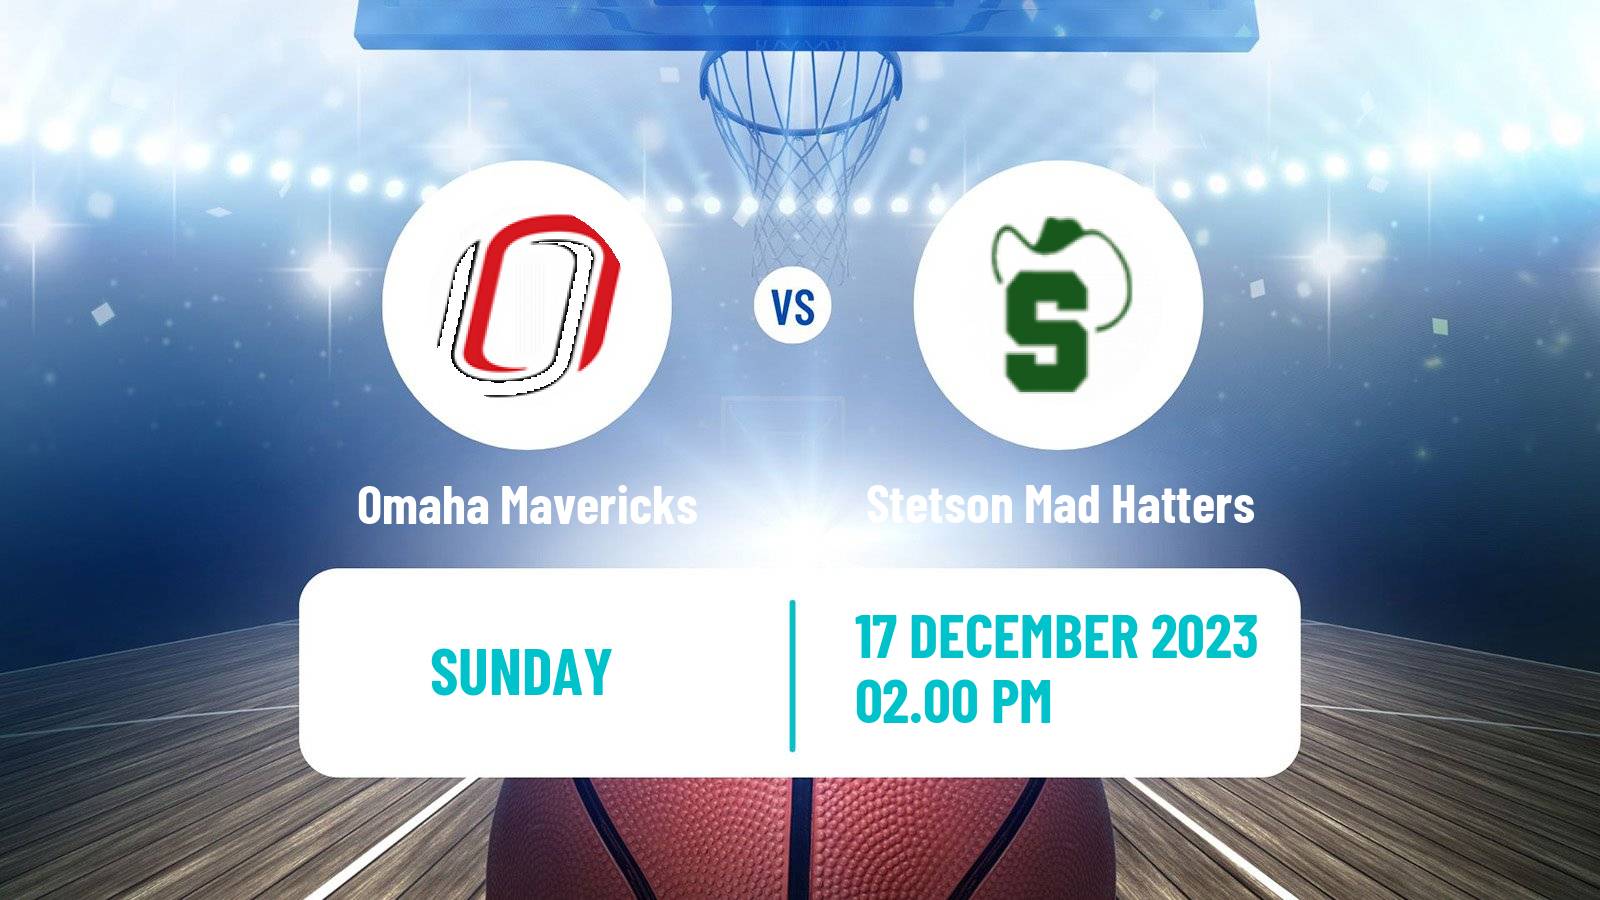 Basketball NCAA College Basketball Omaha Mavericks - Stetson Mad Hatters